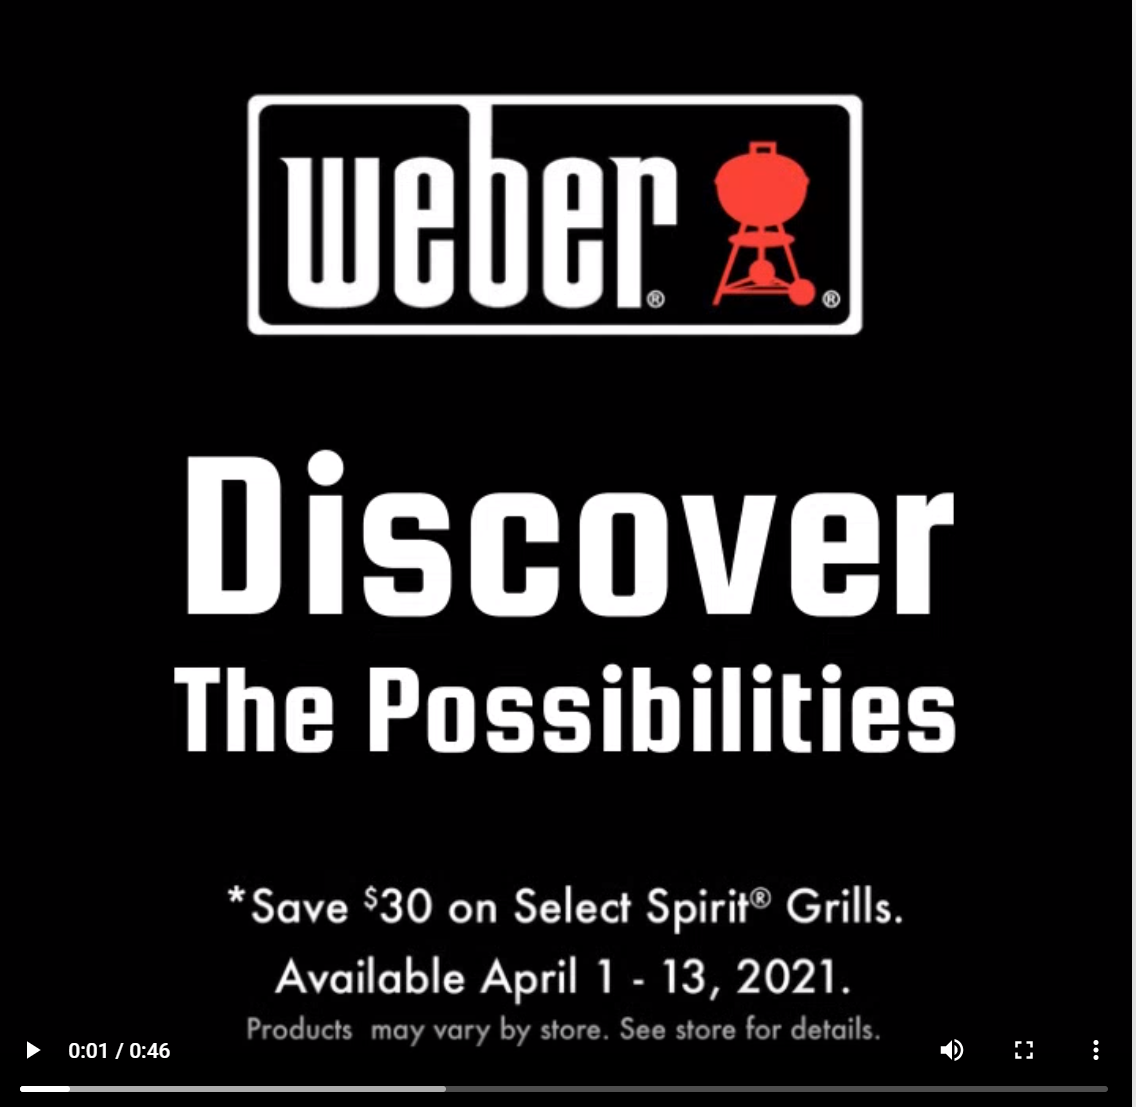 Weber Grills Video